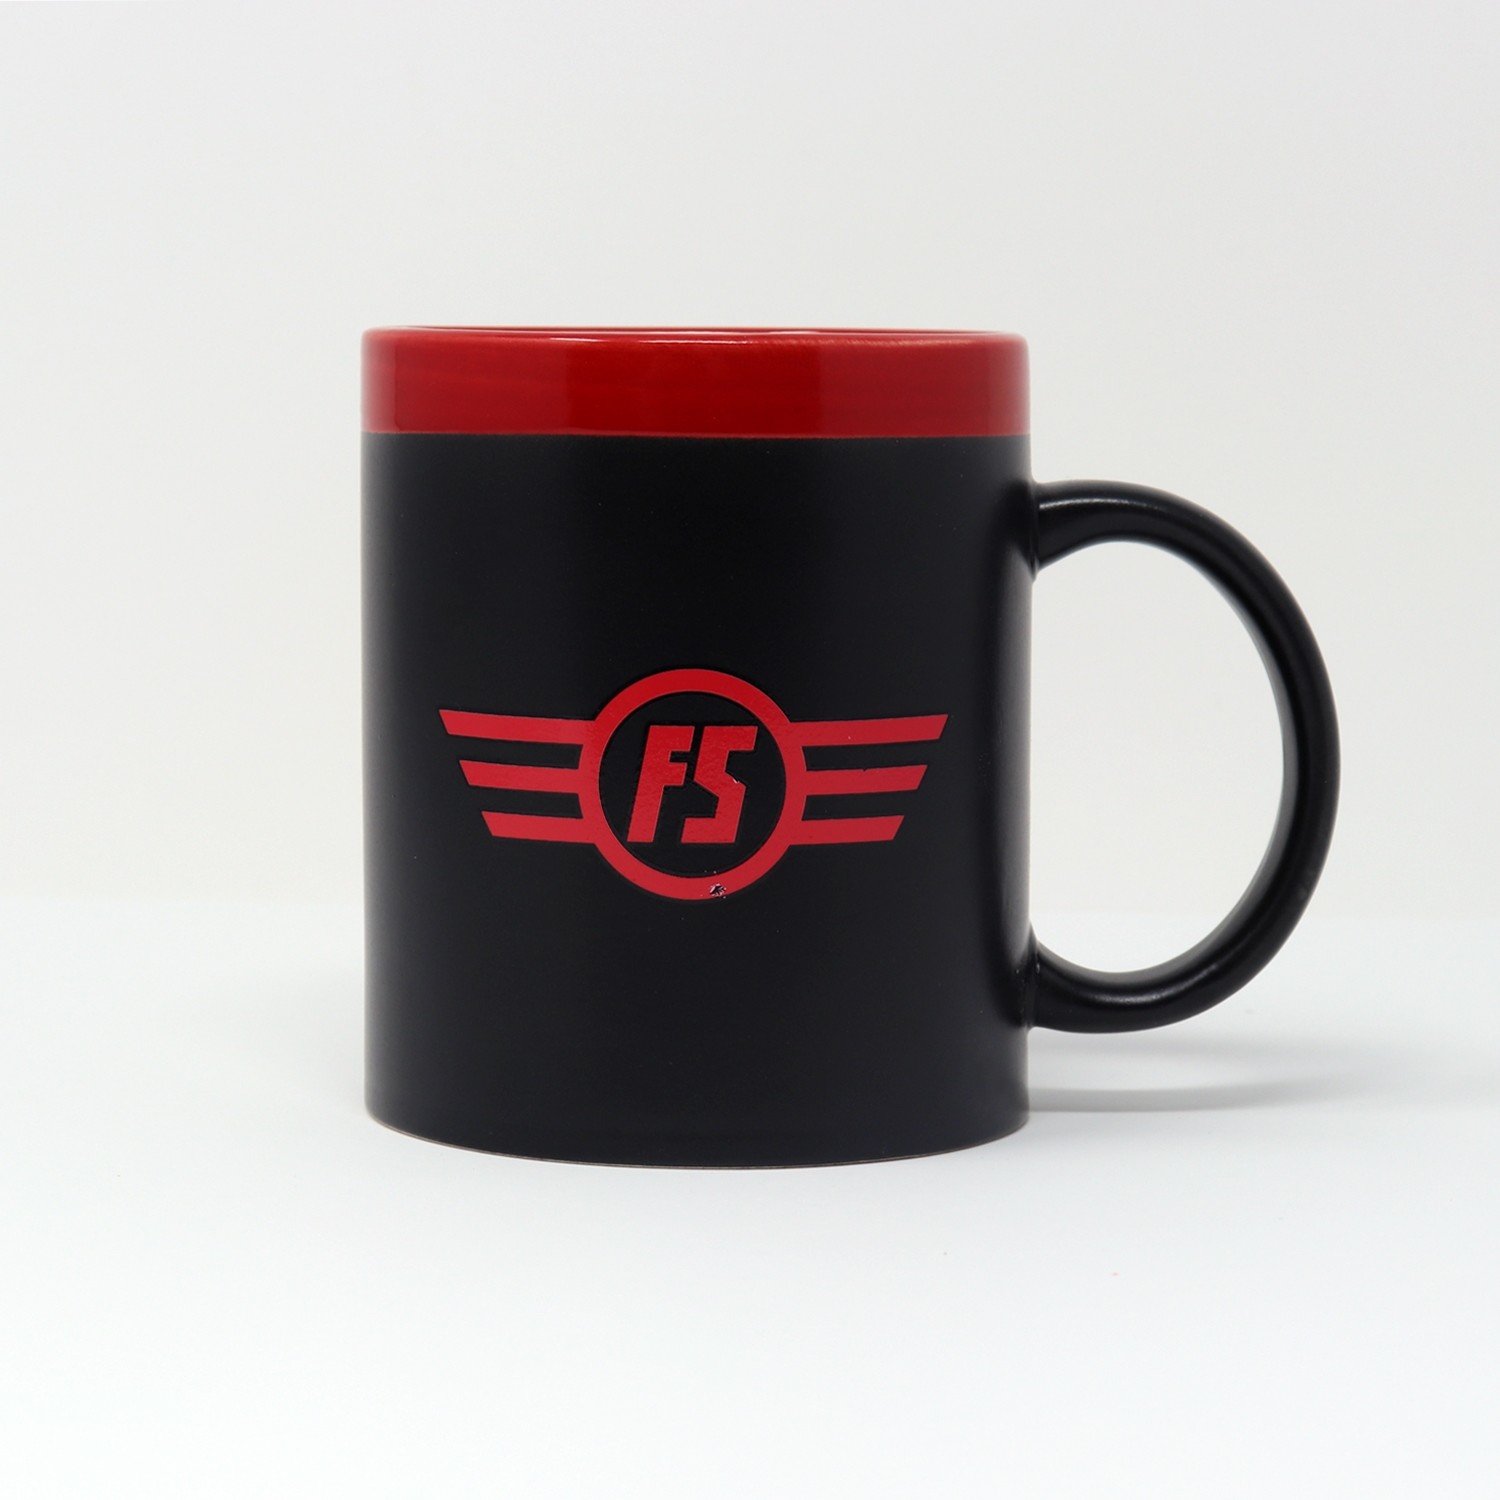 Mug lavagna con logo FS E.444